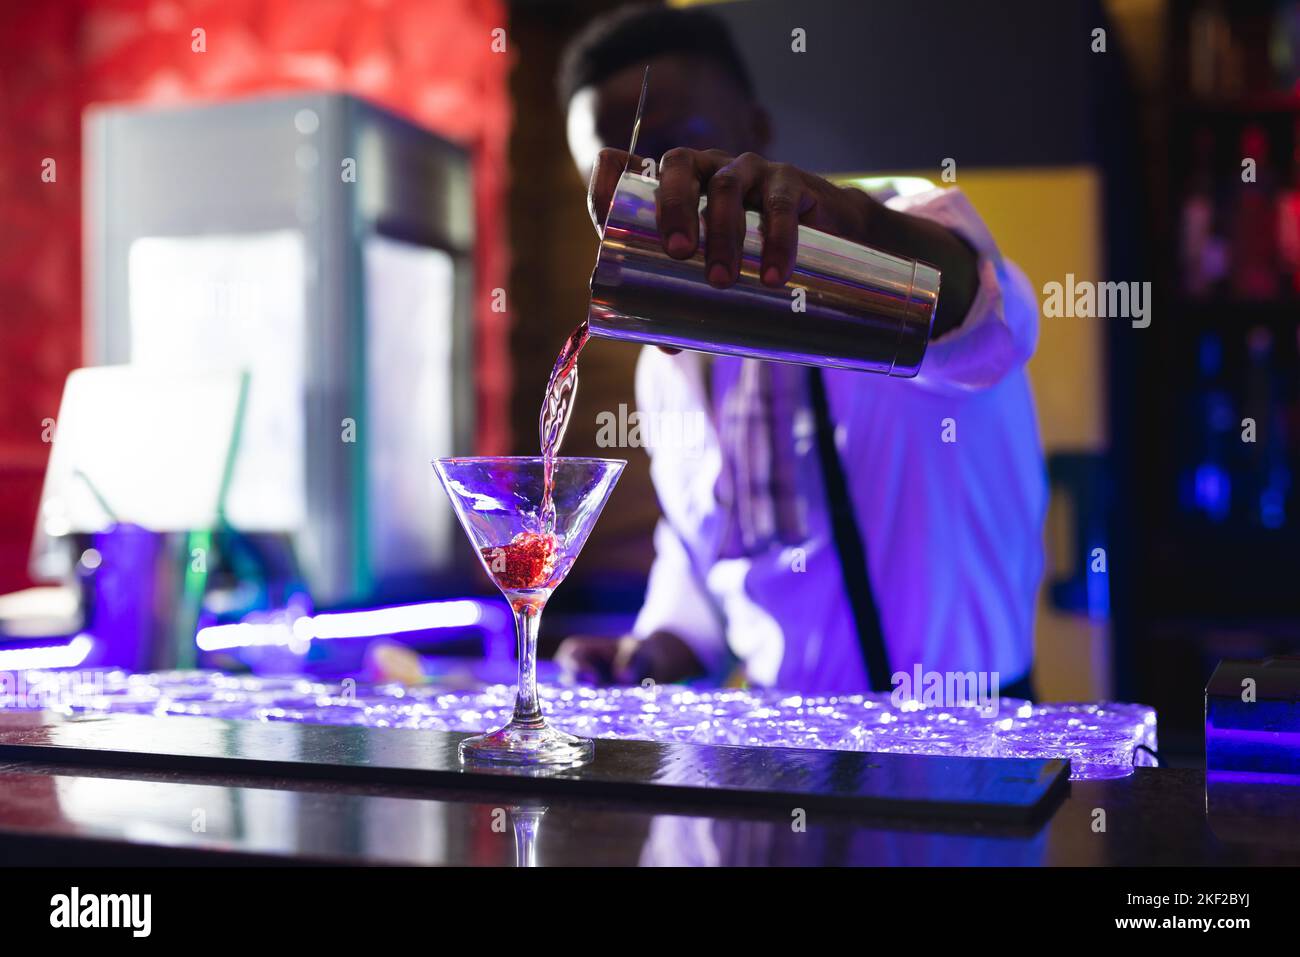 Le barman afro-américain verse un cocktail rose au bar d'une discothèque Banque D'Images